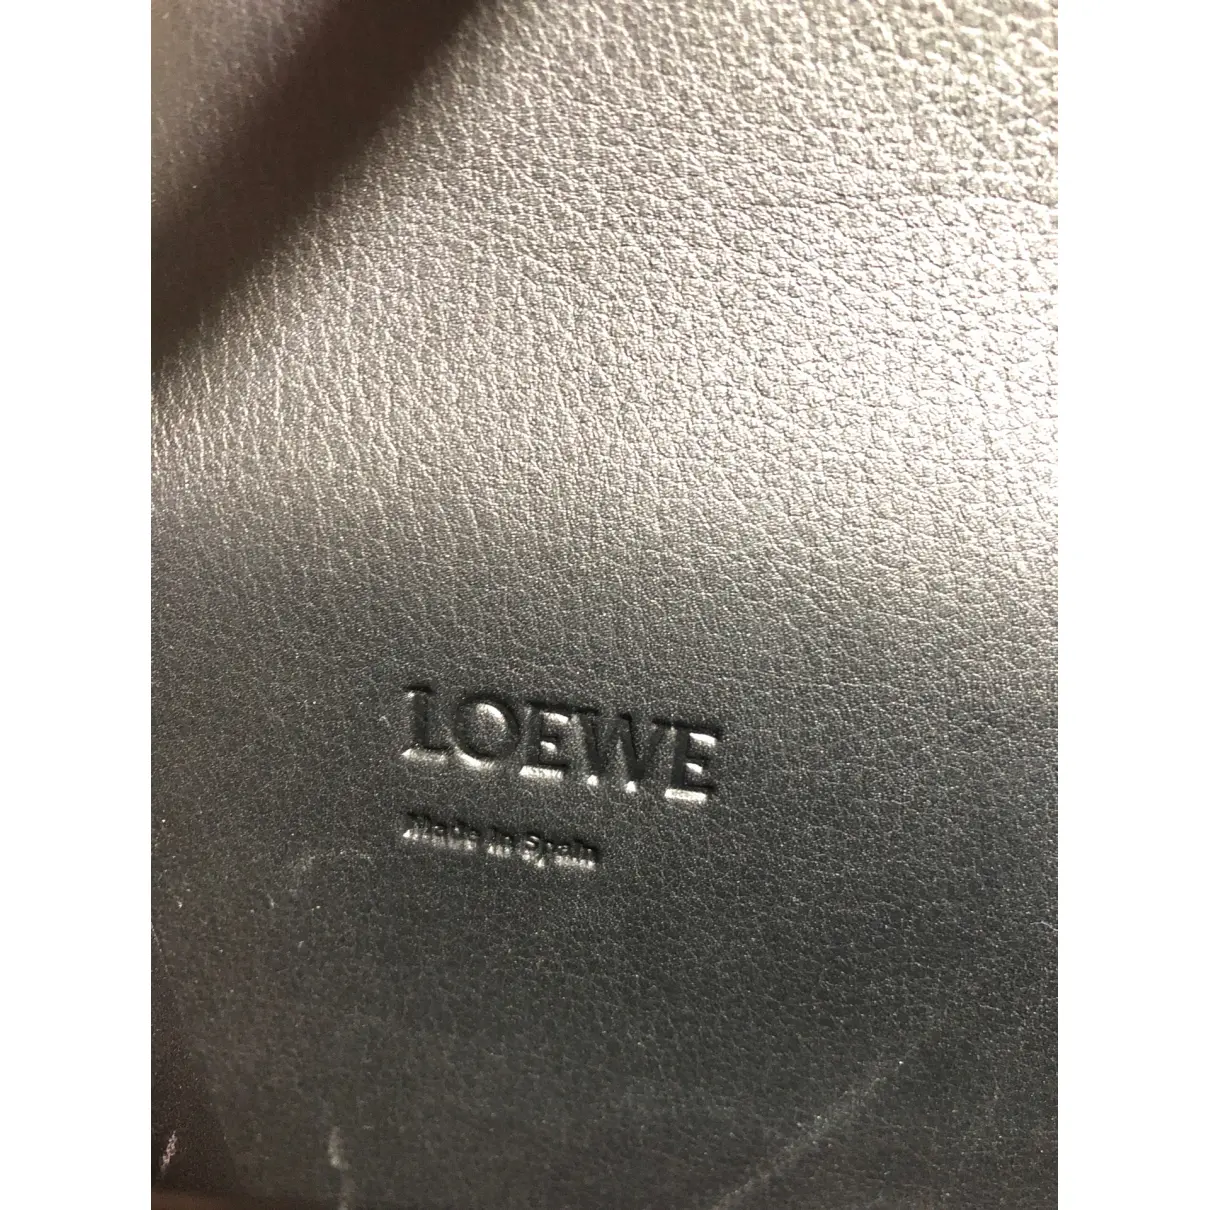 Buy Loewe Barcelona leather crossbody bag online